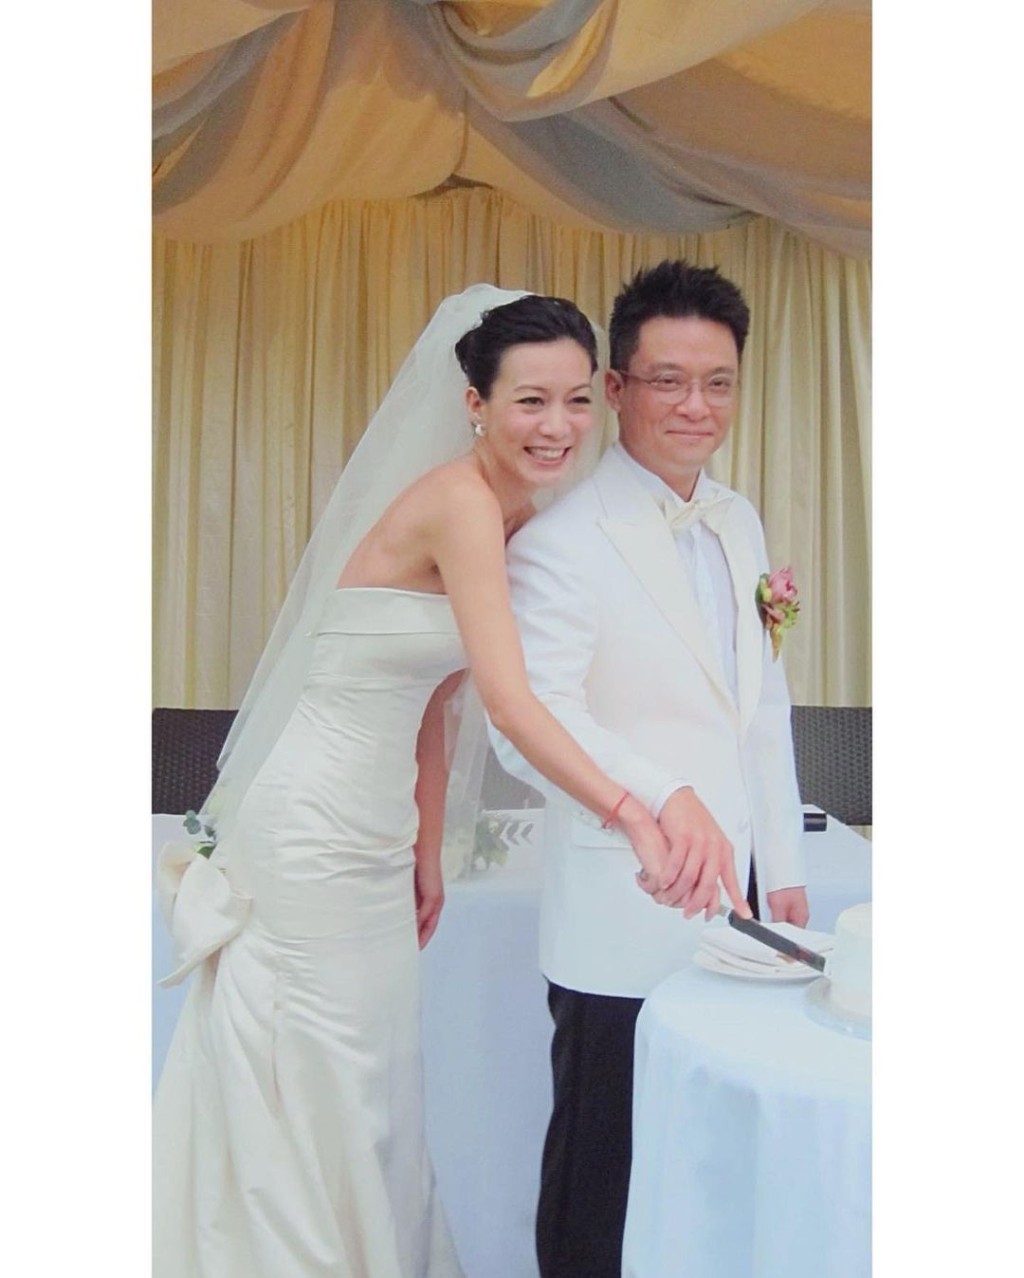 赵学而和圈外建筑师男友苏国基于2011年结婚。